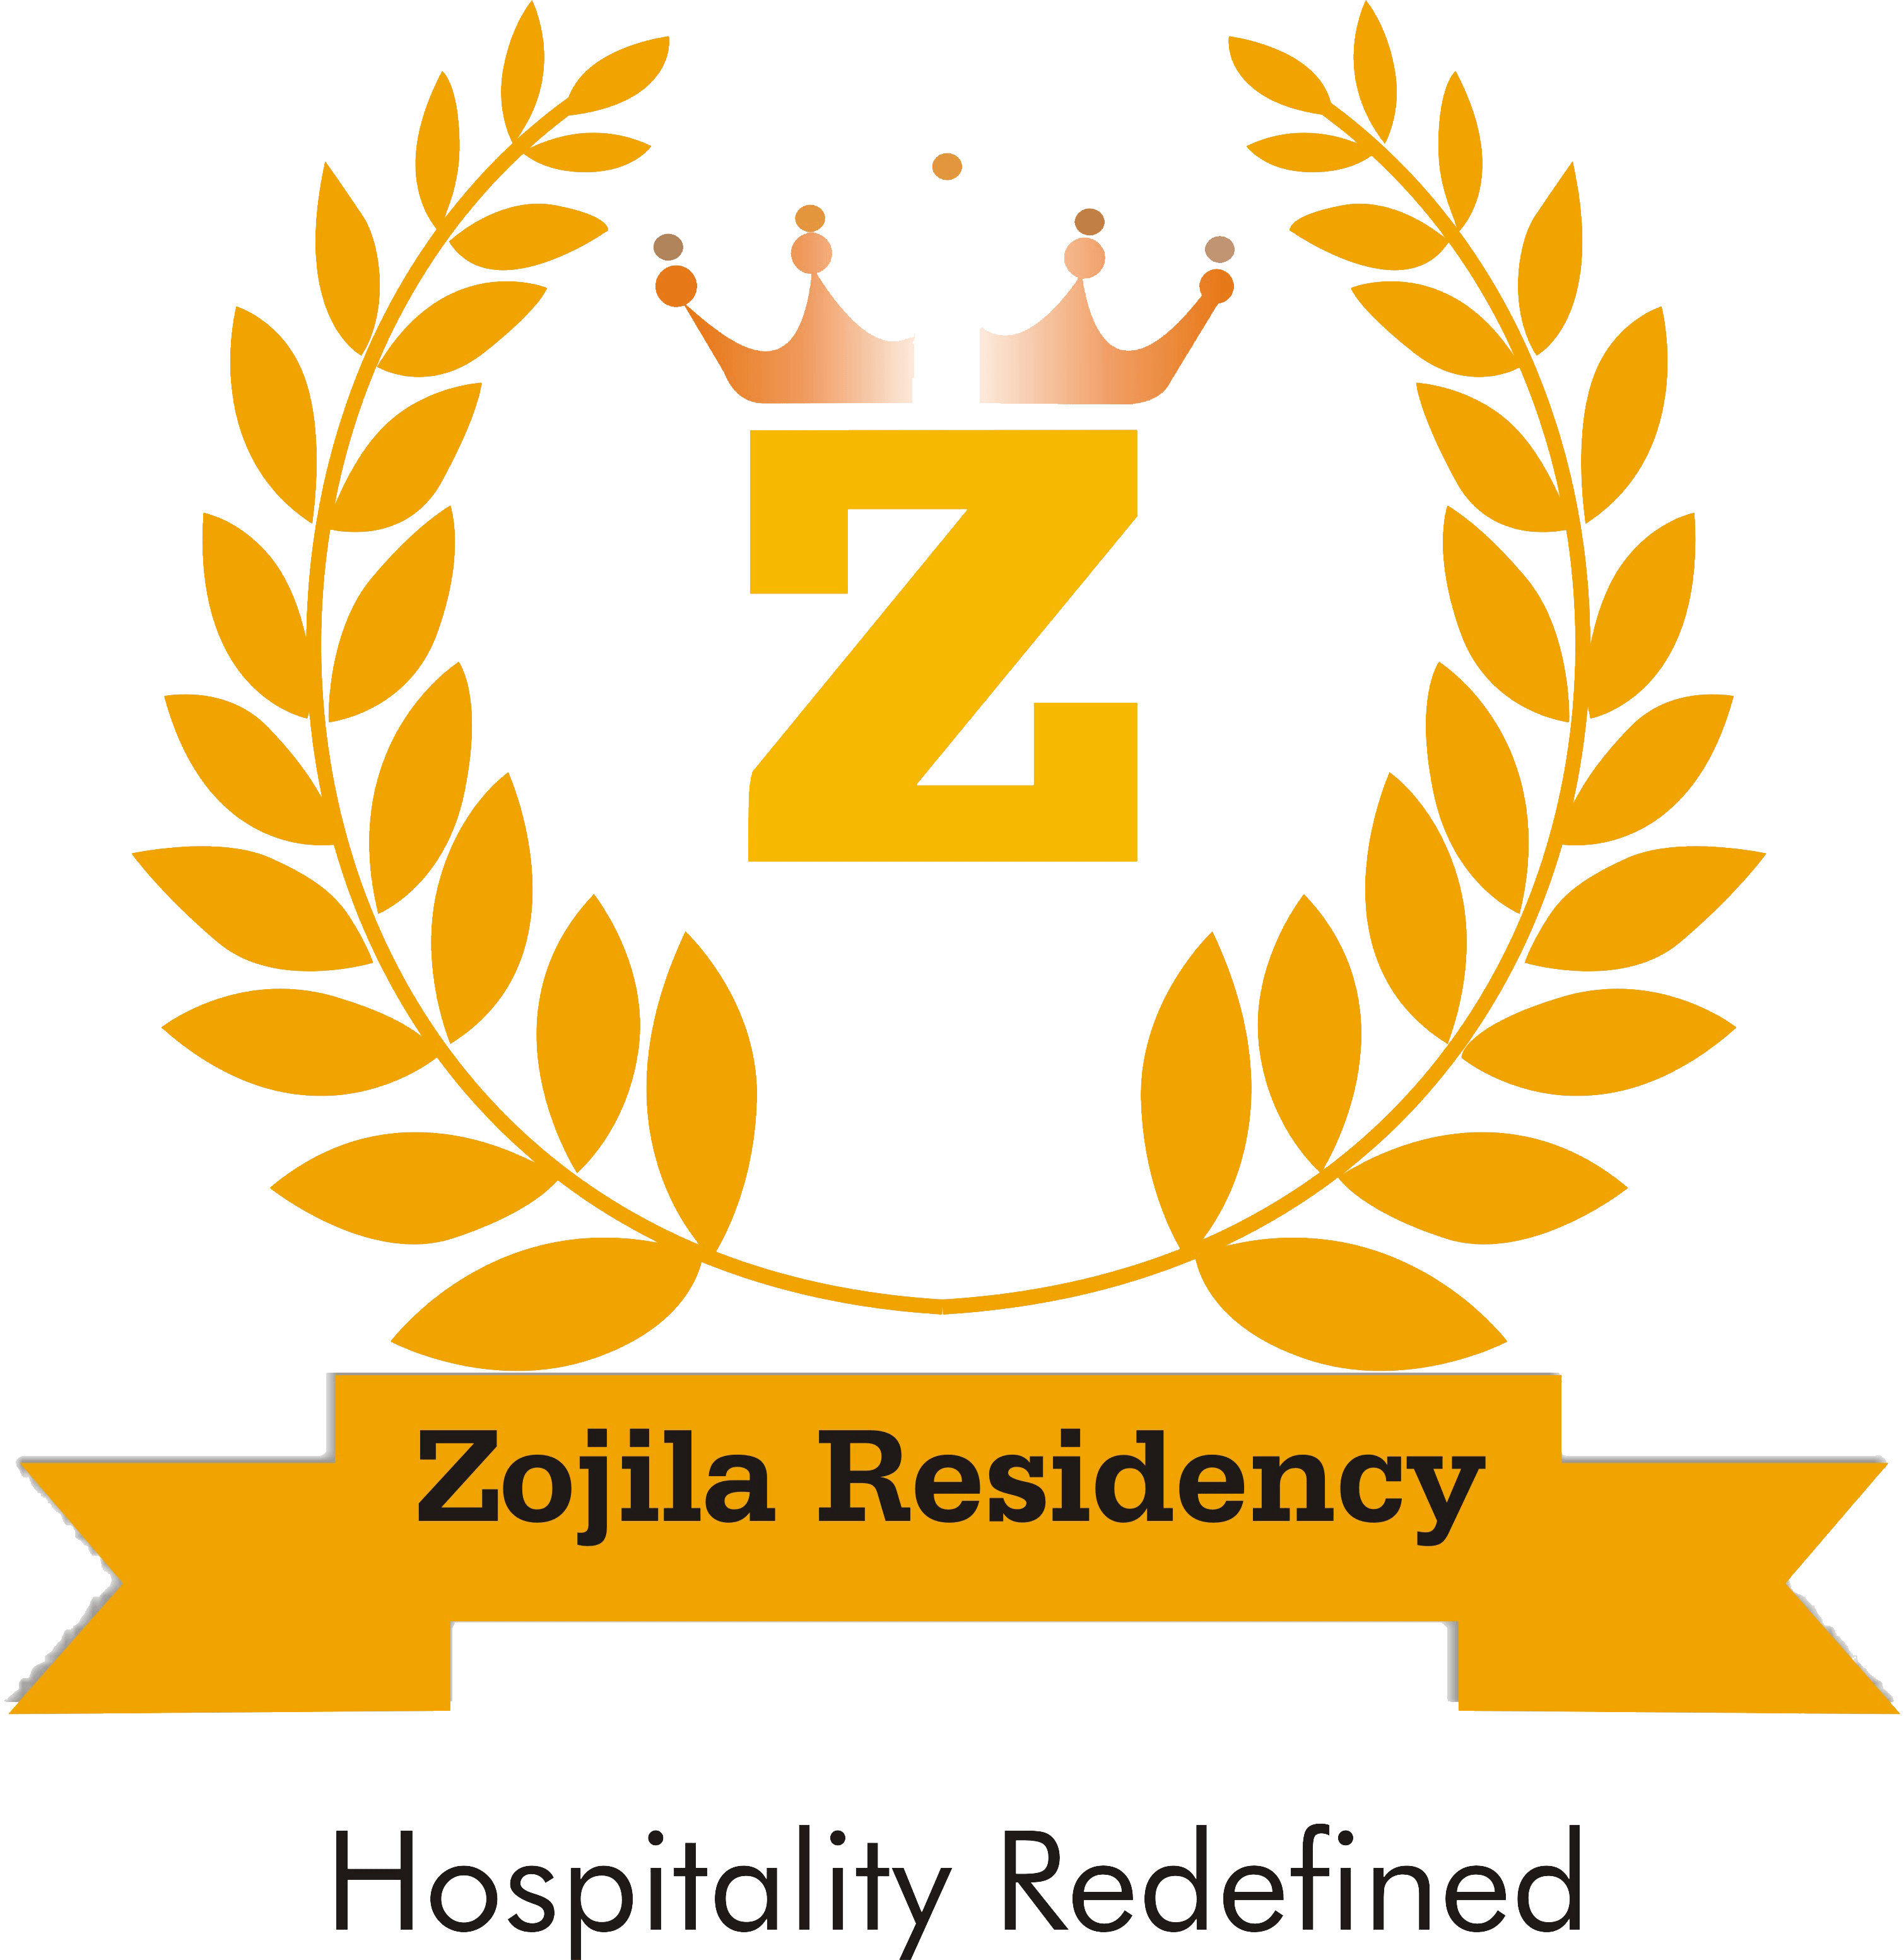 Hotel Zojila Residency|Hotel|Accomodation